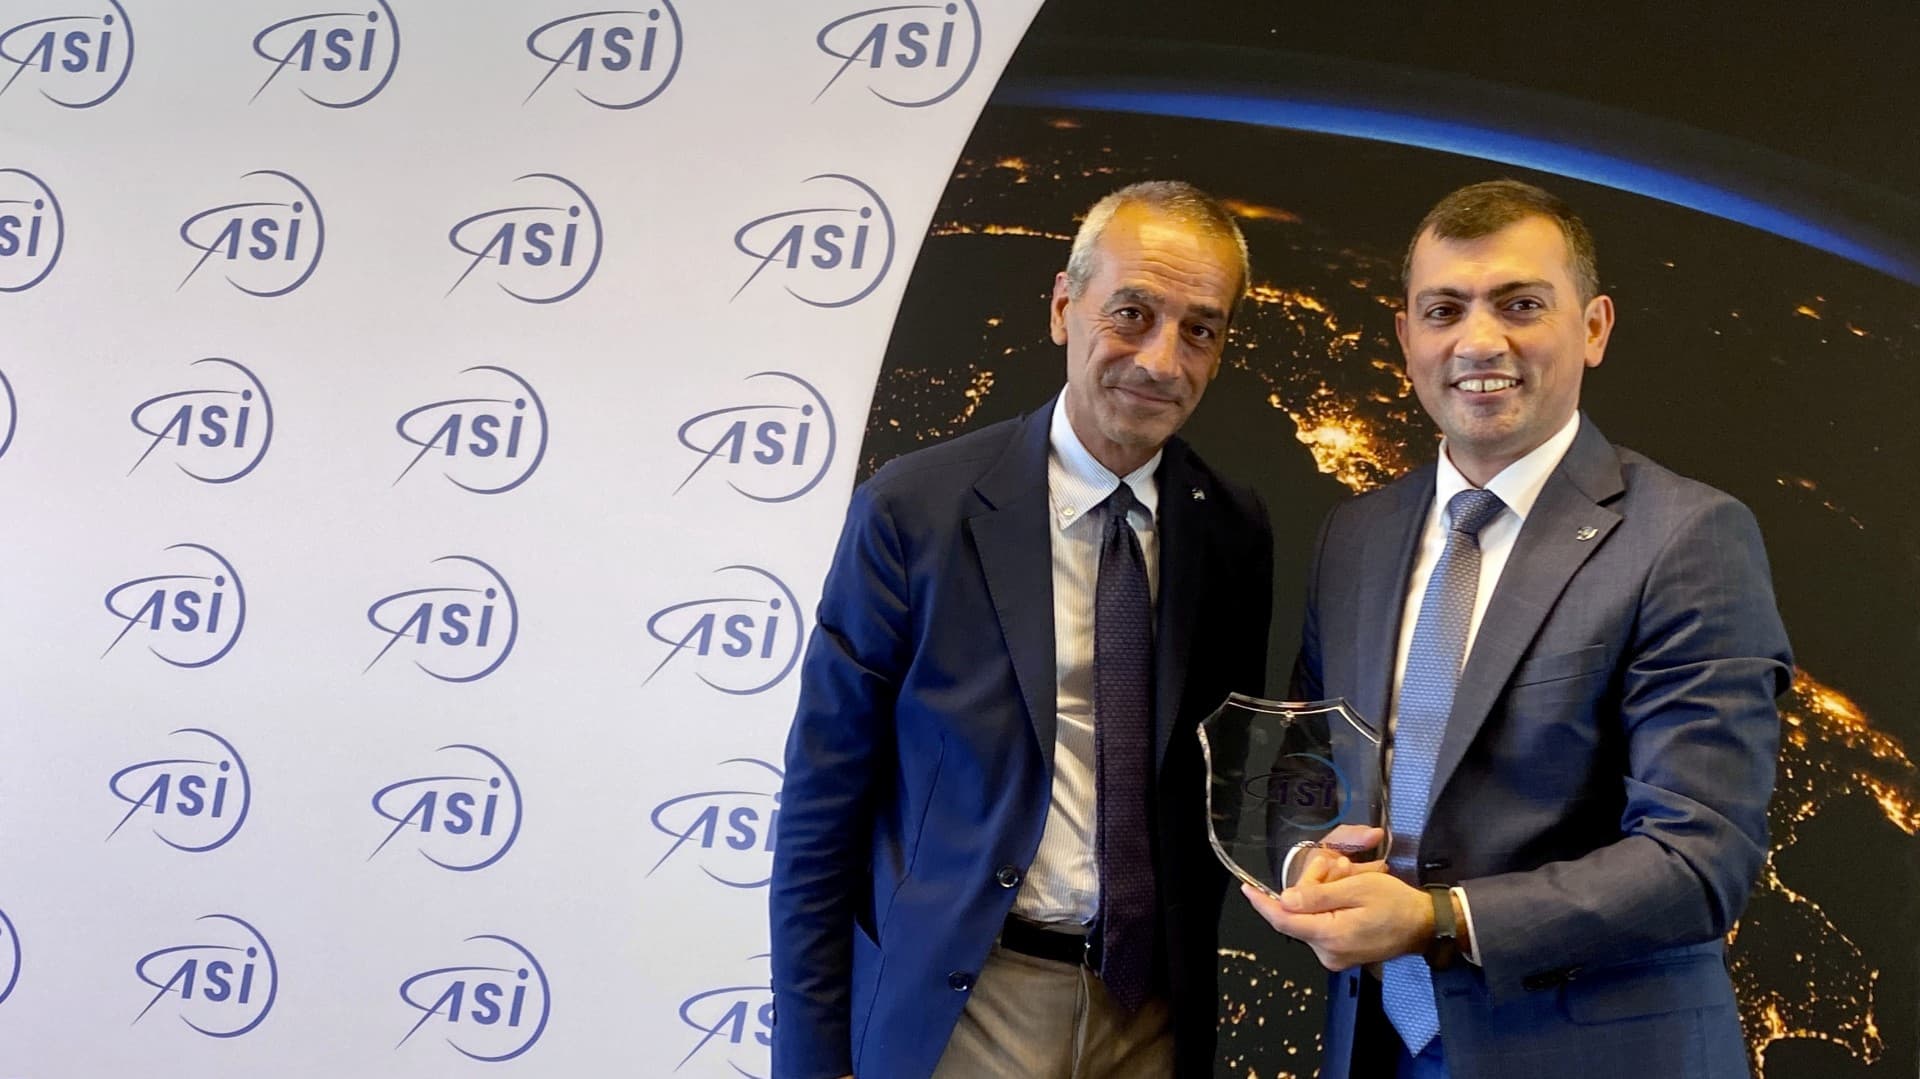 ASI - Il Vice Presidente di Azercosmos visita l’ASI, in vista dello IAC di Baku